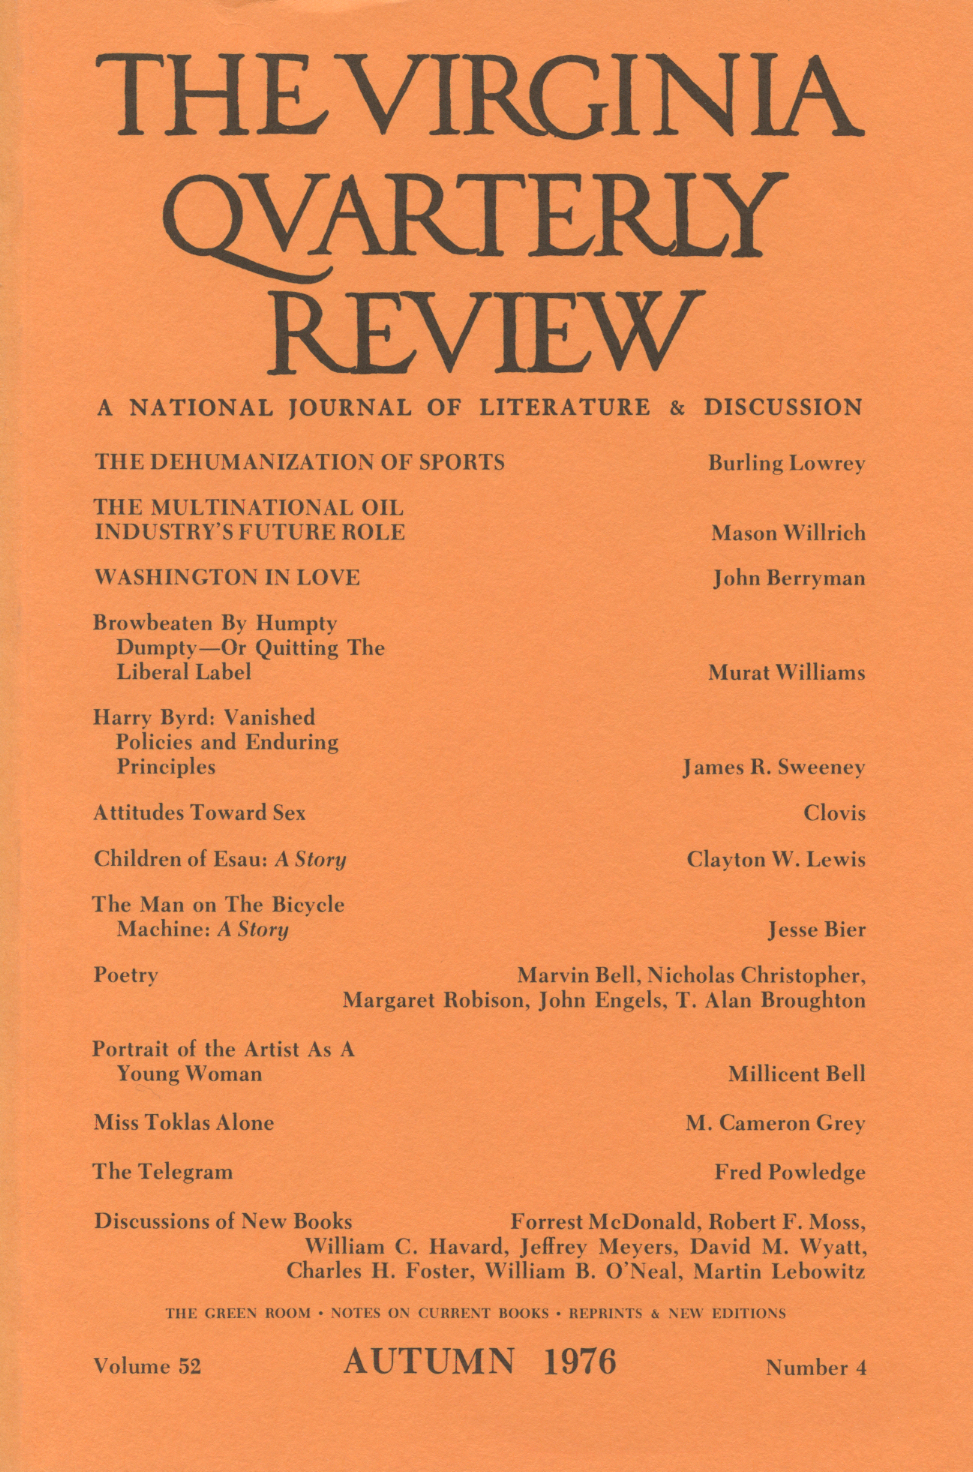 Virginia Quarterly Review, Autumn 1976 cover